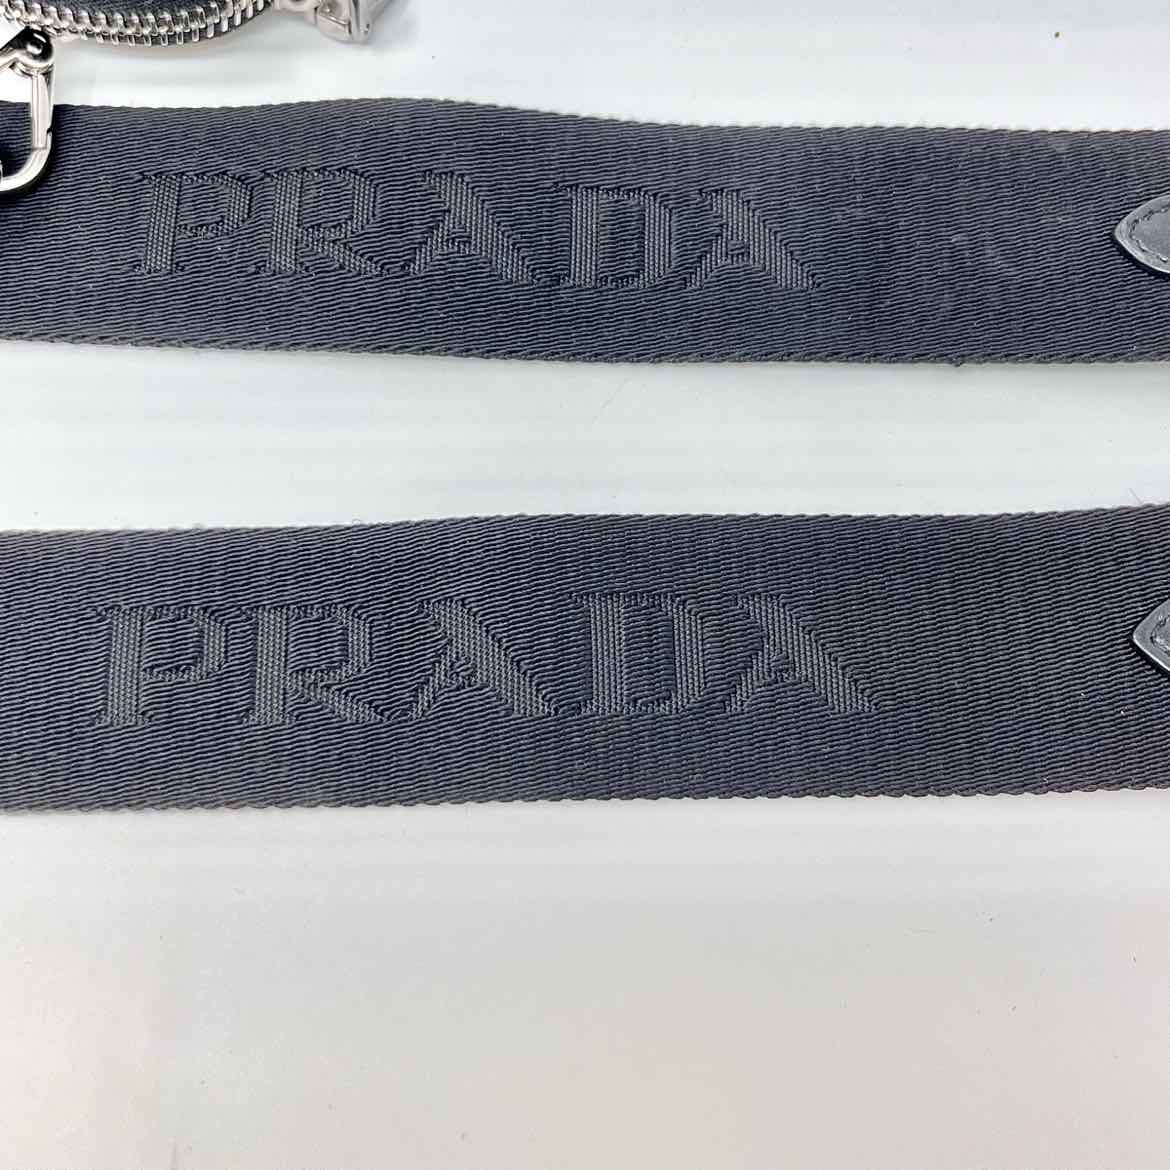 Prada Purse Strap with Mini Pouch